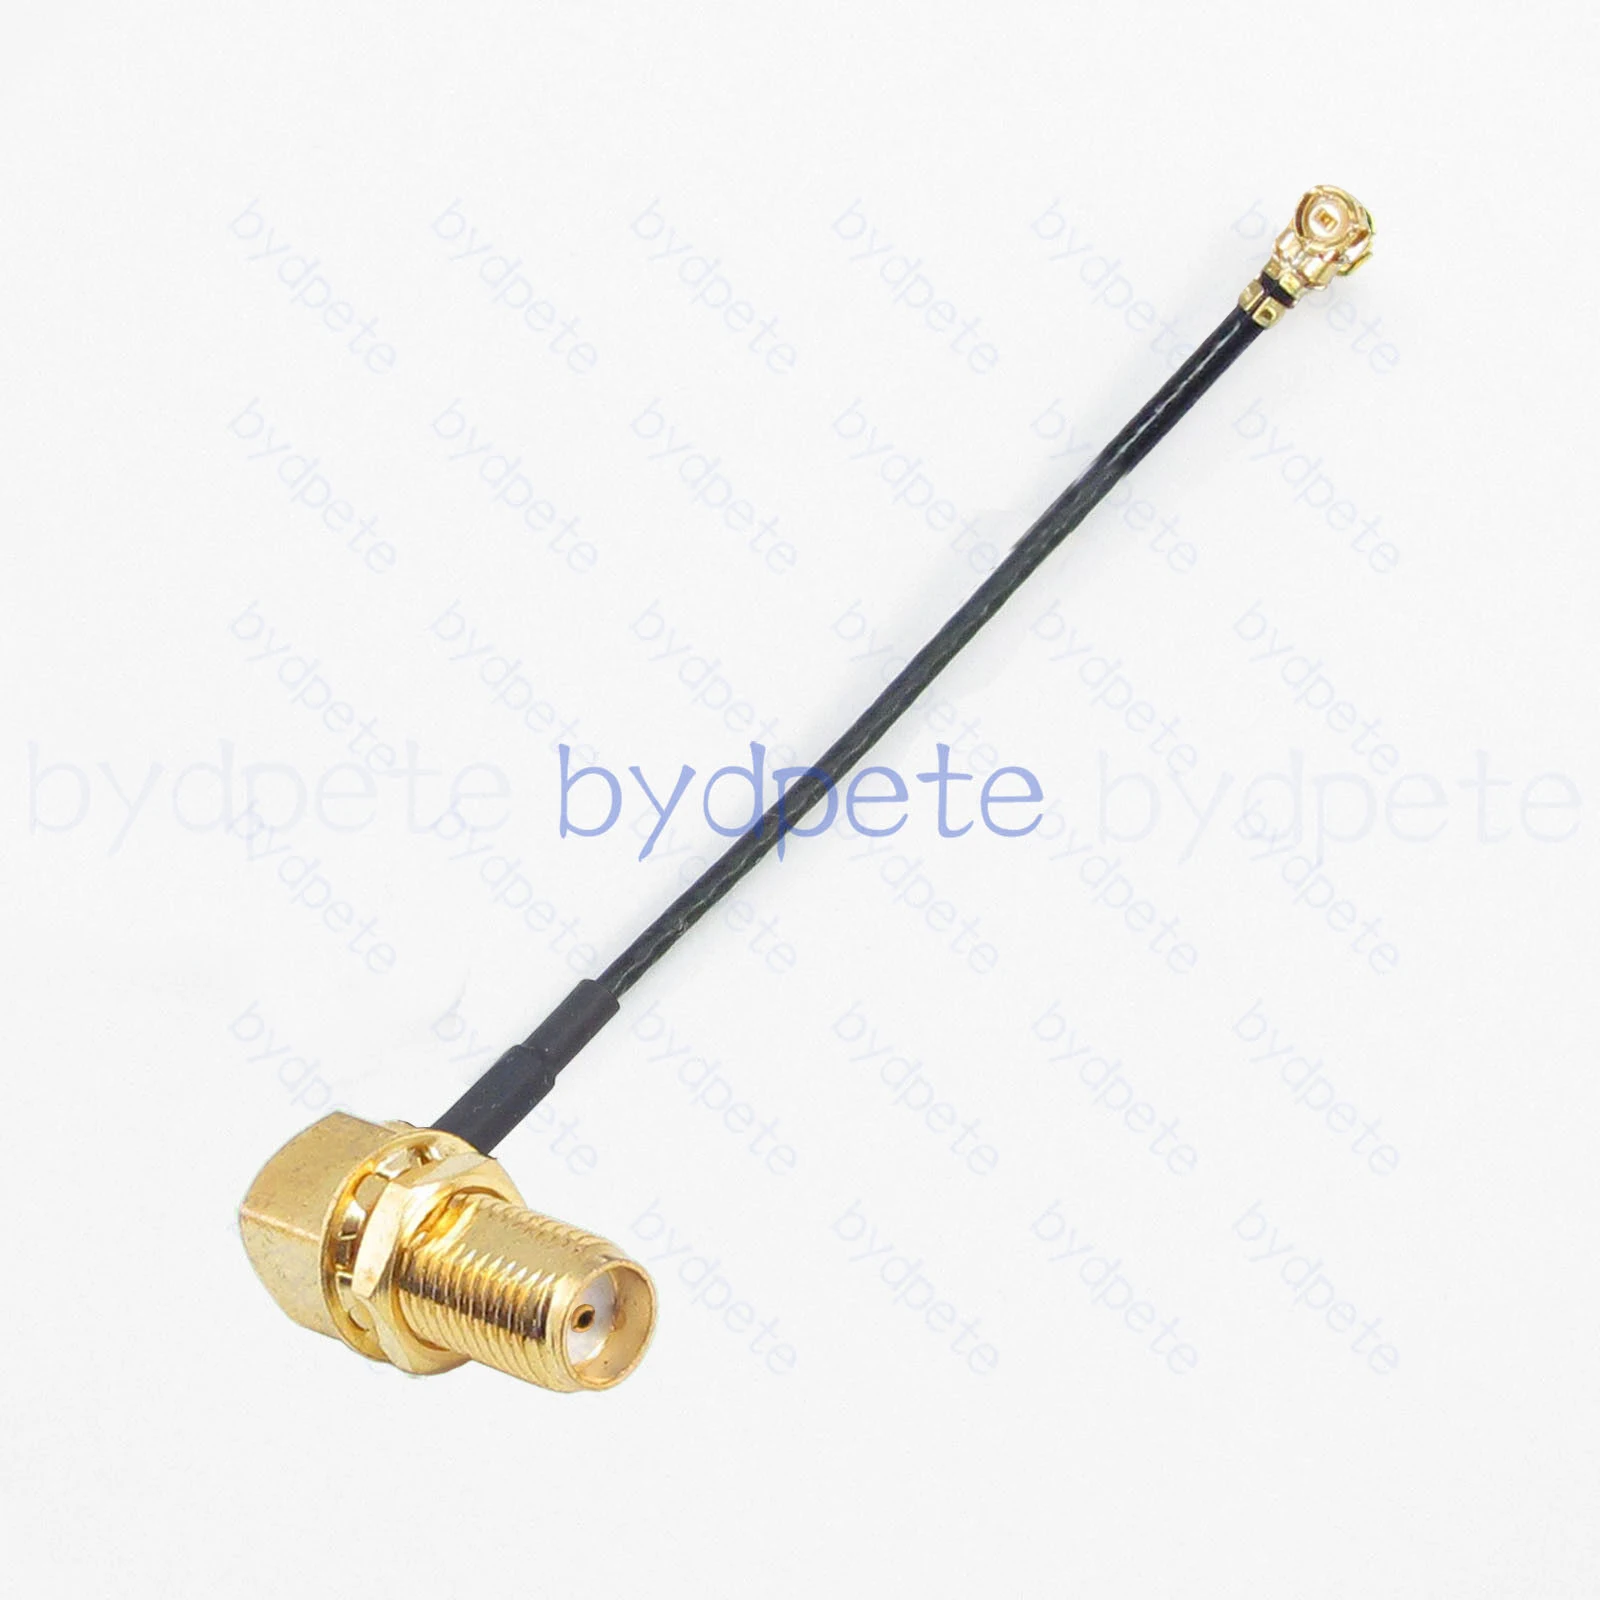 

Разъем IPX U.FL UFL для женской перегородки под прямым углом RF113 1,13 мм коаксиальный кабель Pigtail Kable 50 Ом IPX IPEX